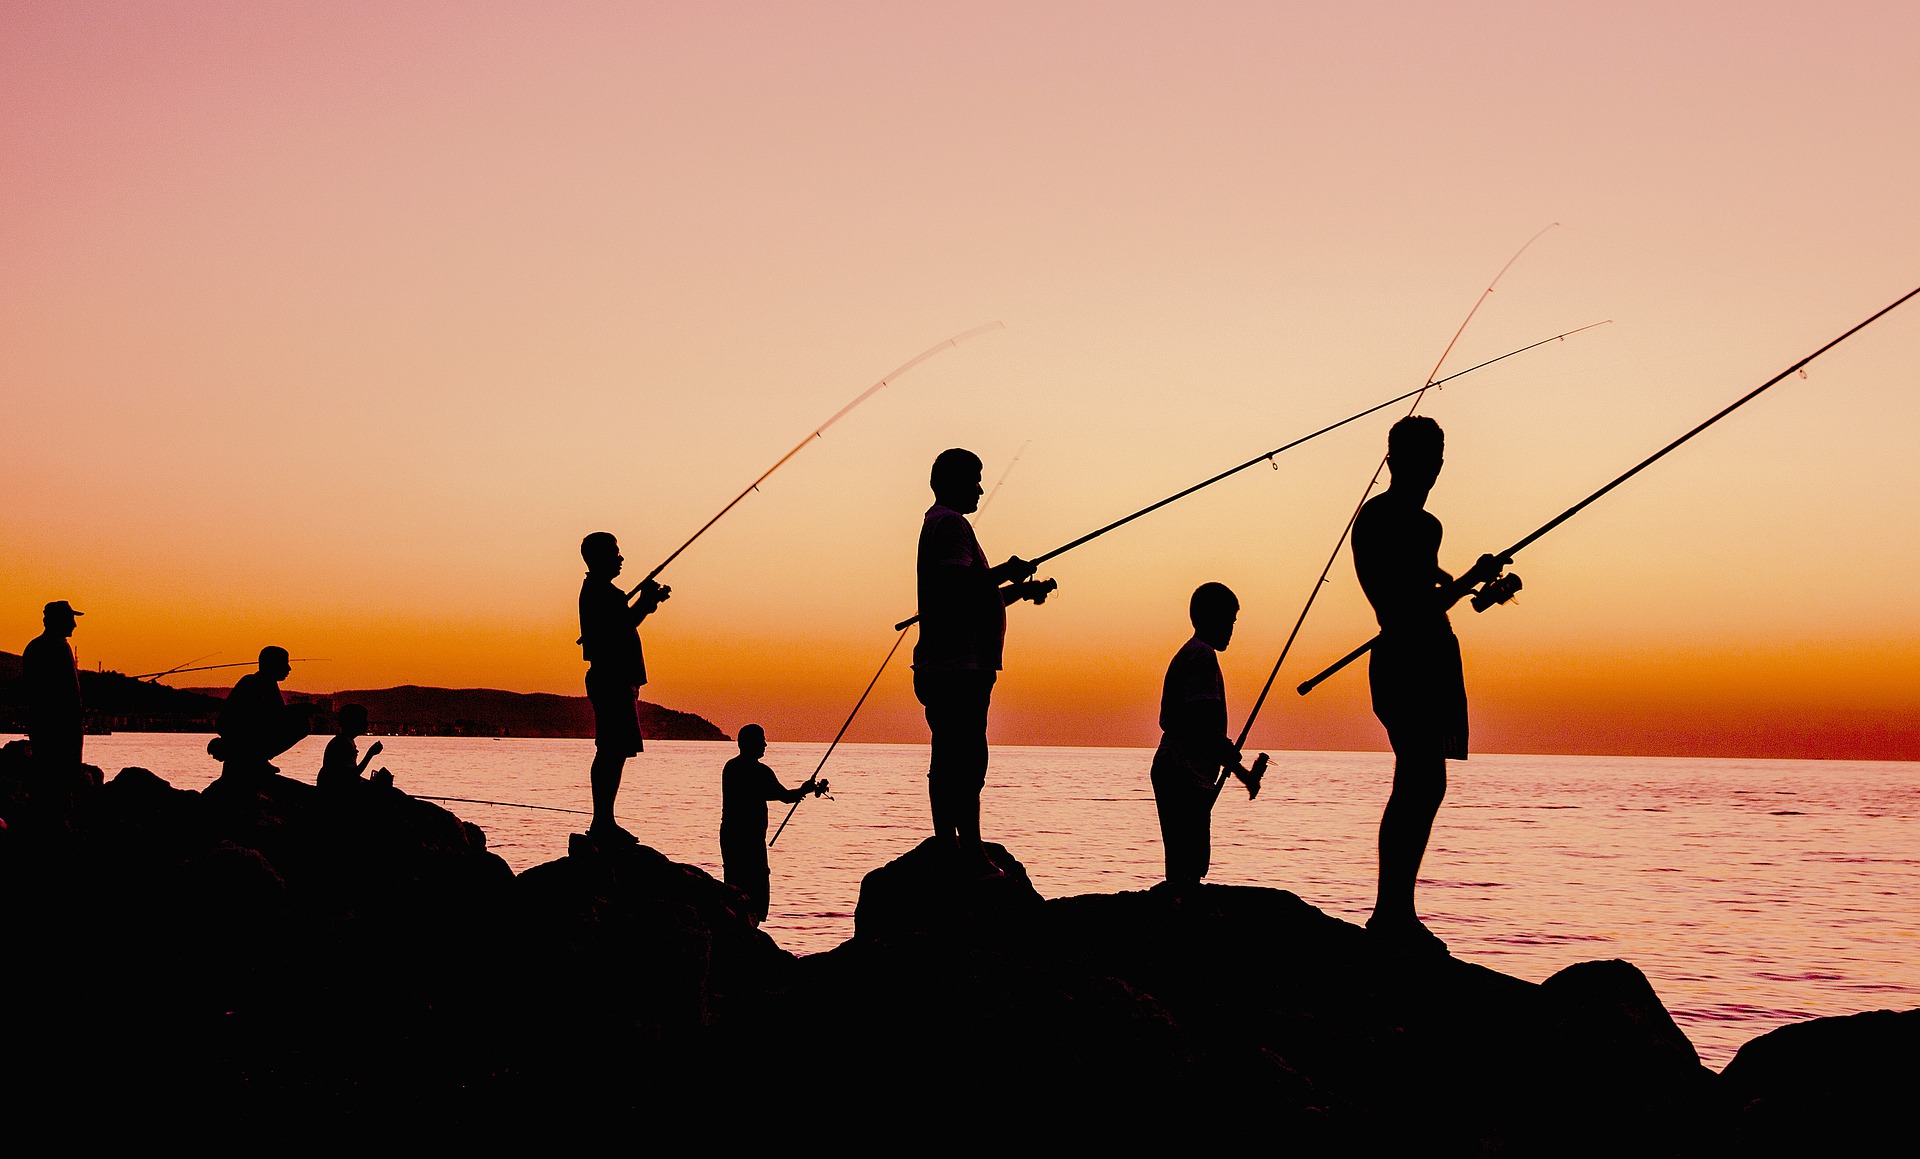  Por Qu La pesca Hace Que Los Peces Sean Cada Vez M s Peque os 